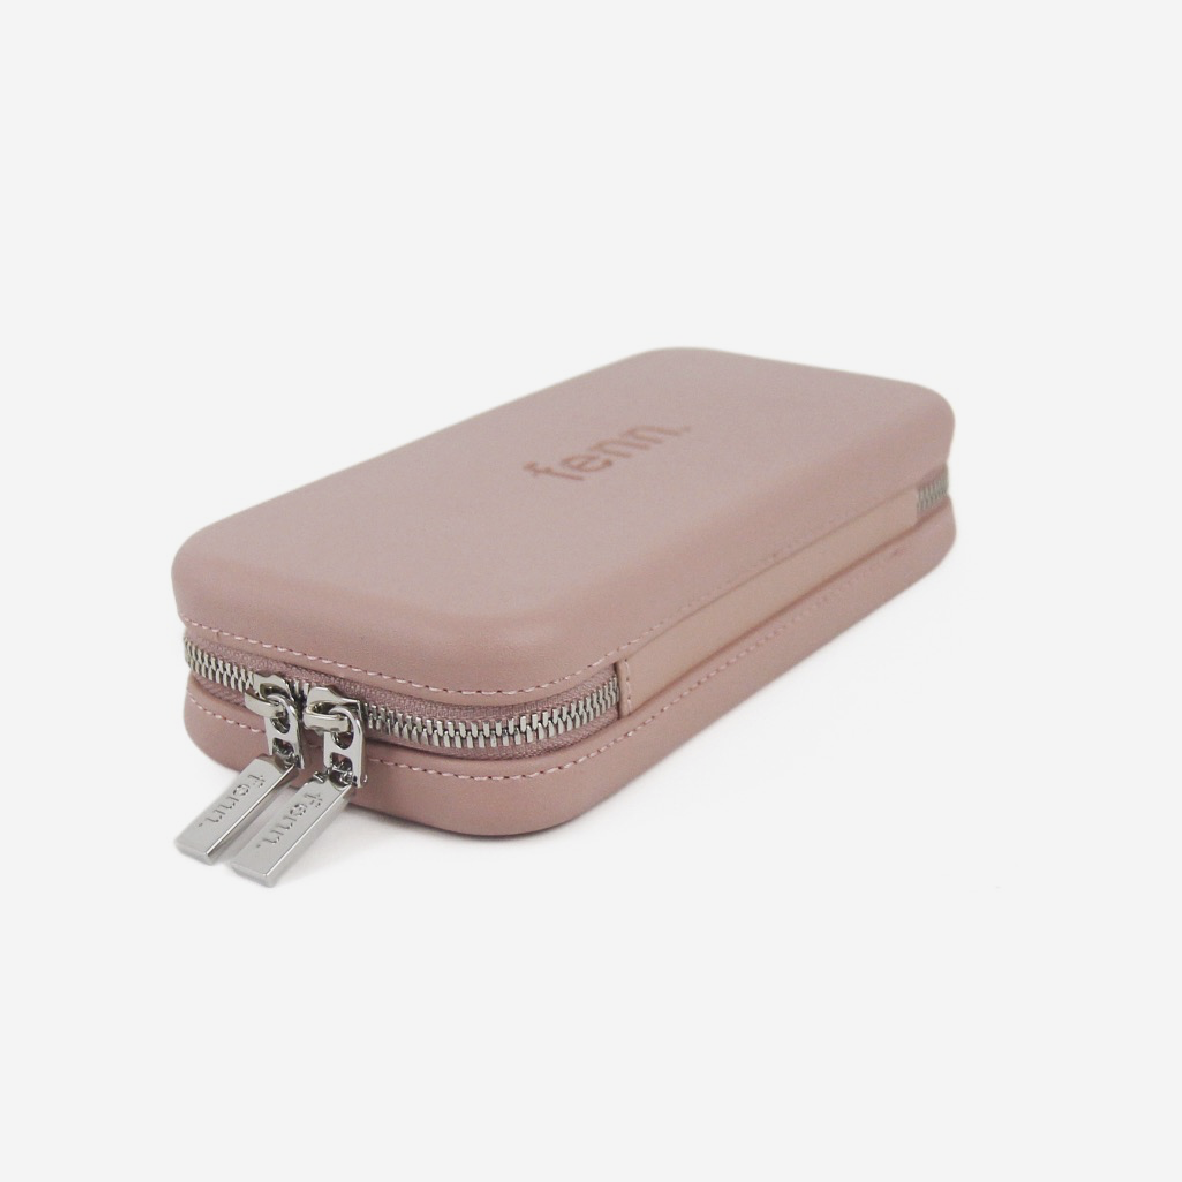 Original Wallet With Zip - Pink